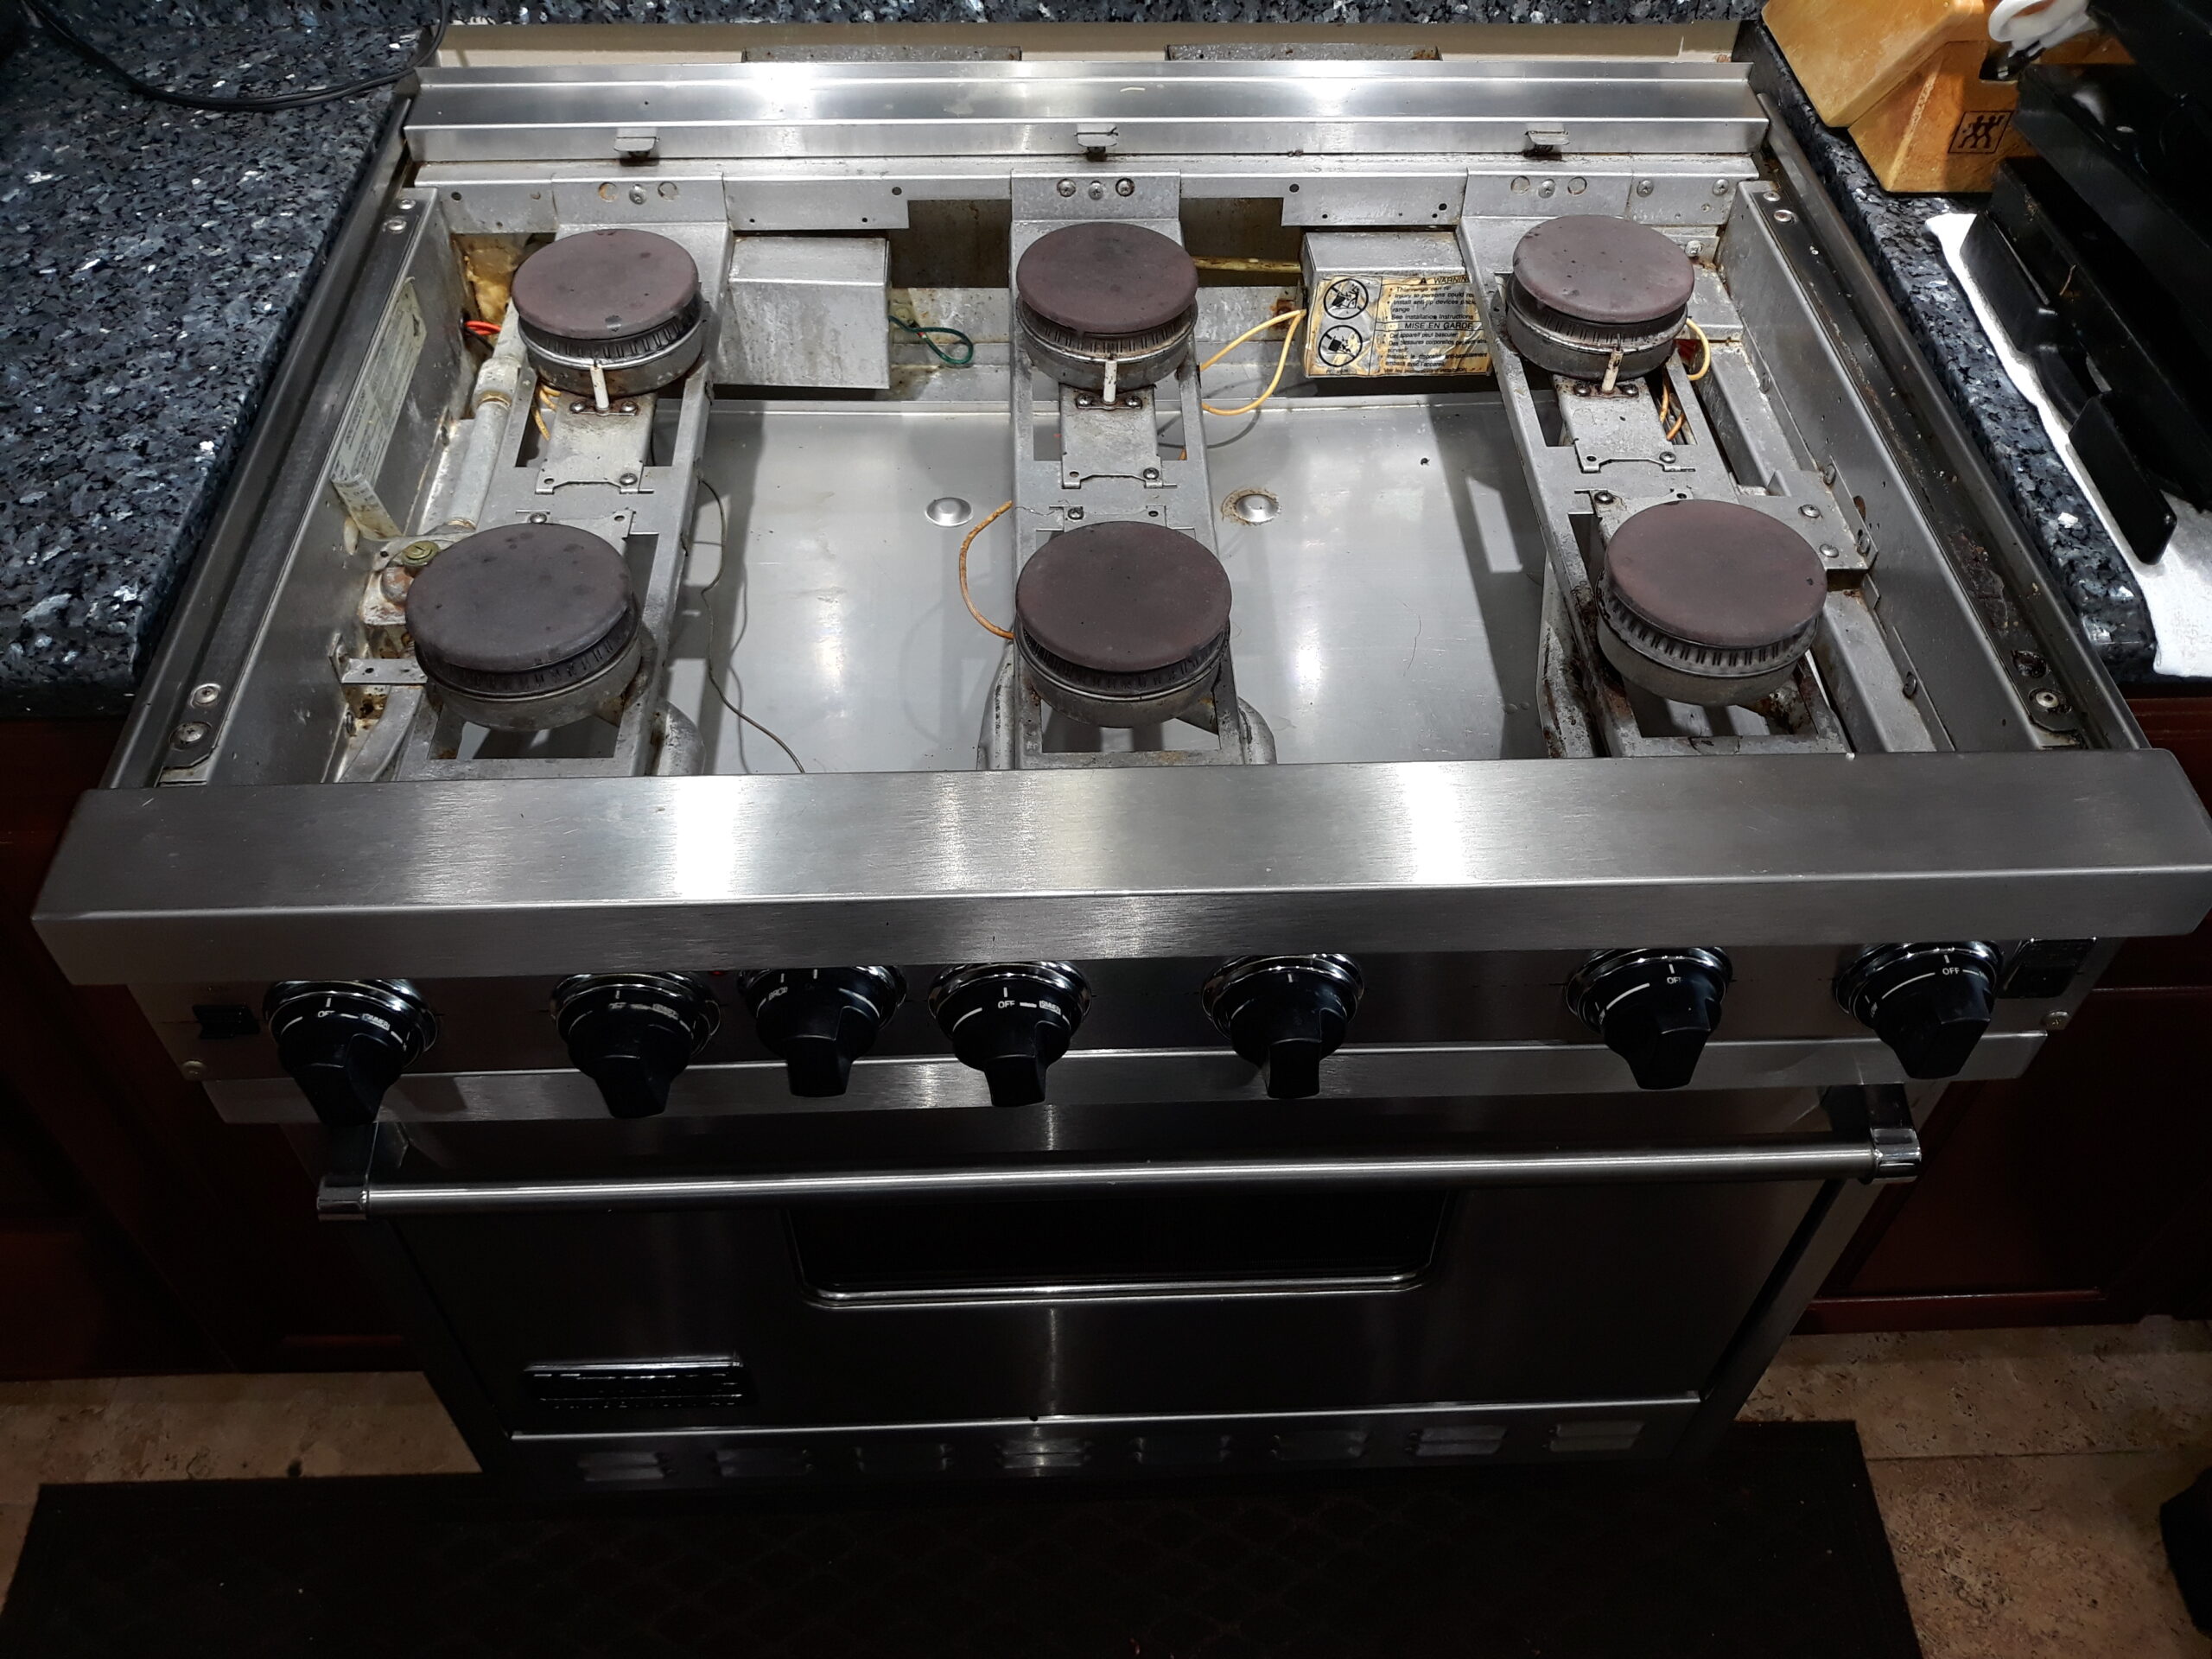 appliance repair gas stove top not igniting sprite lane lake hart orlando fl 32832